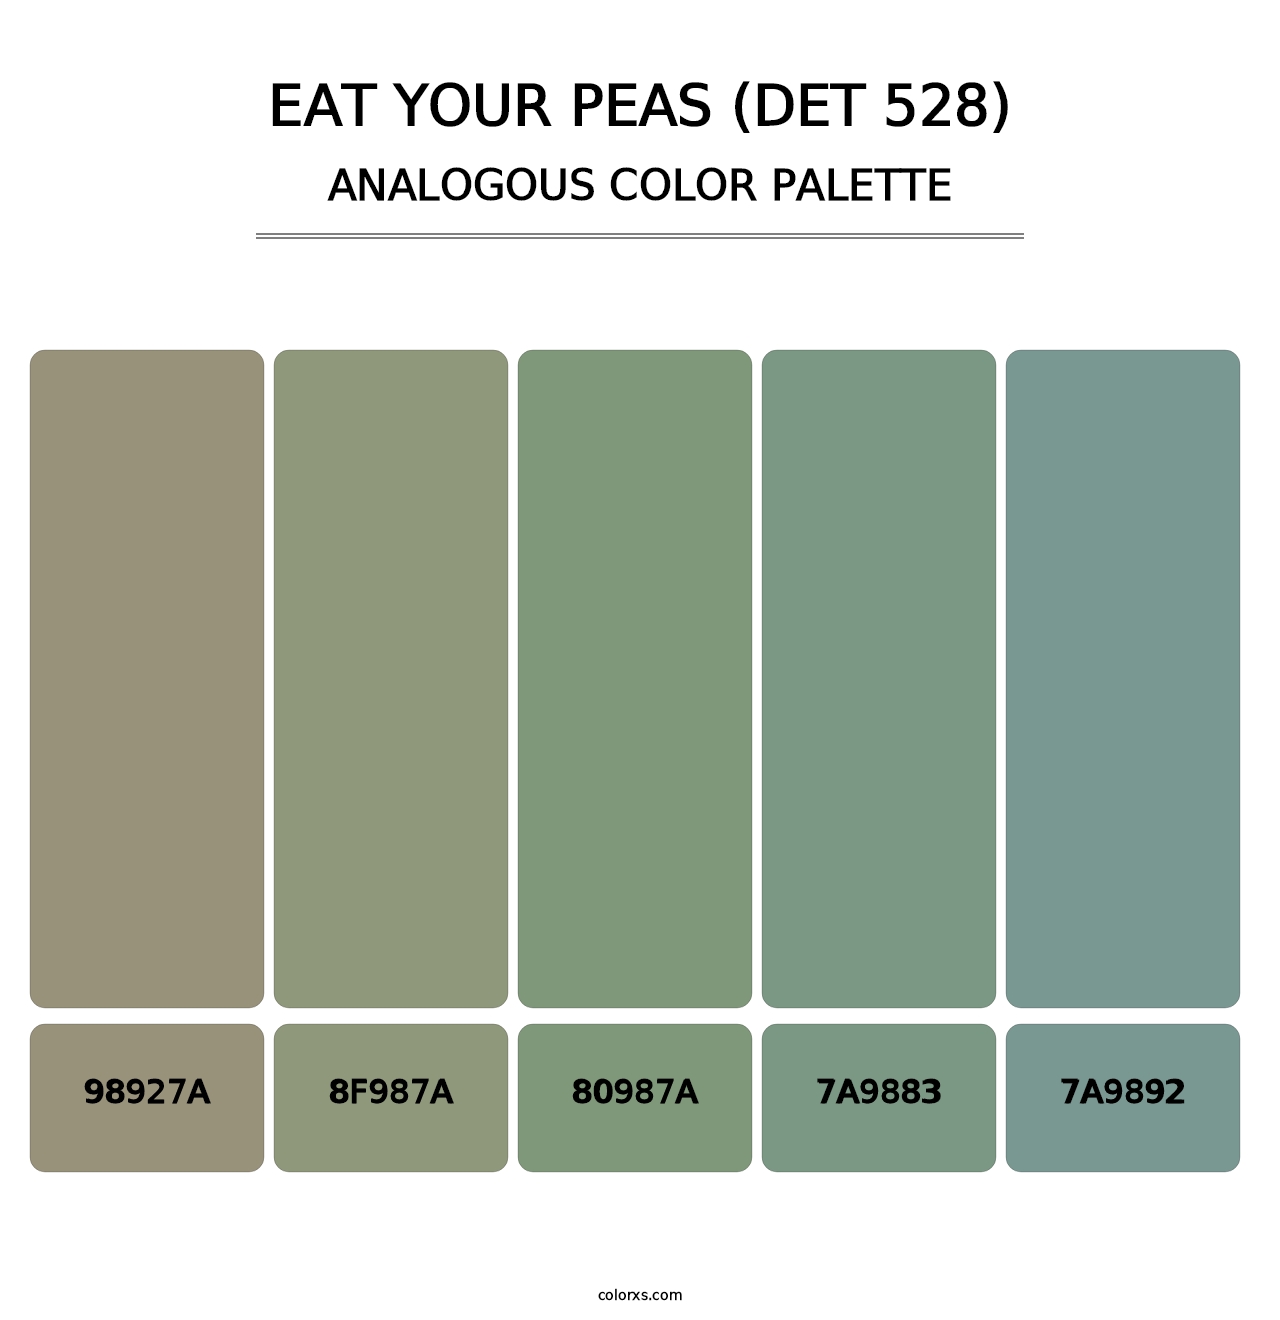 Eat Your Peas (DET 528) - Analogous Color Palette